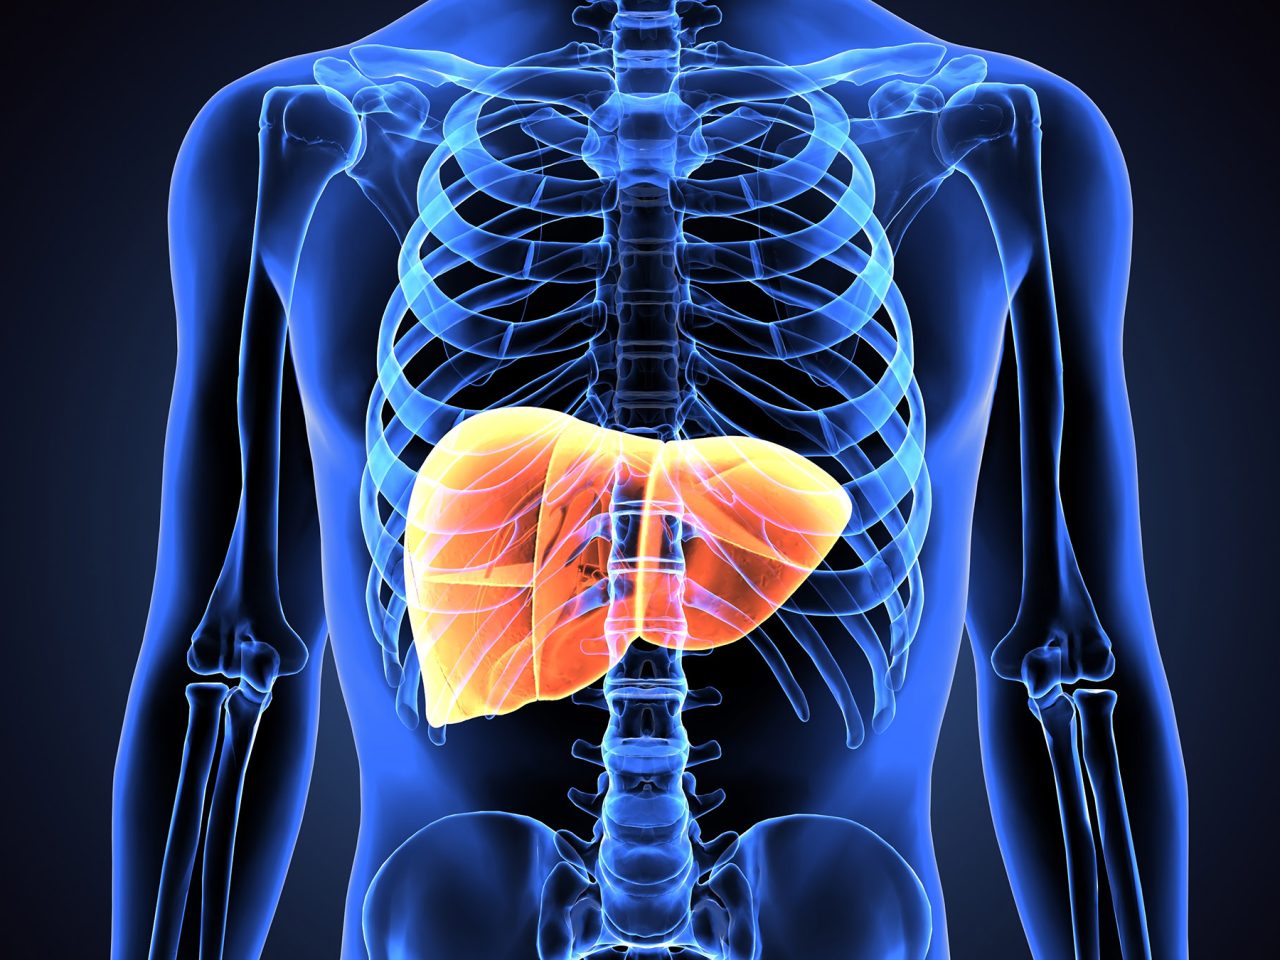 illustration of liver